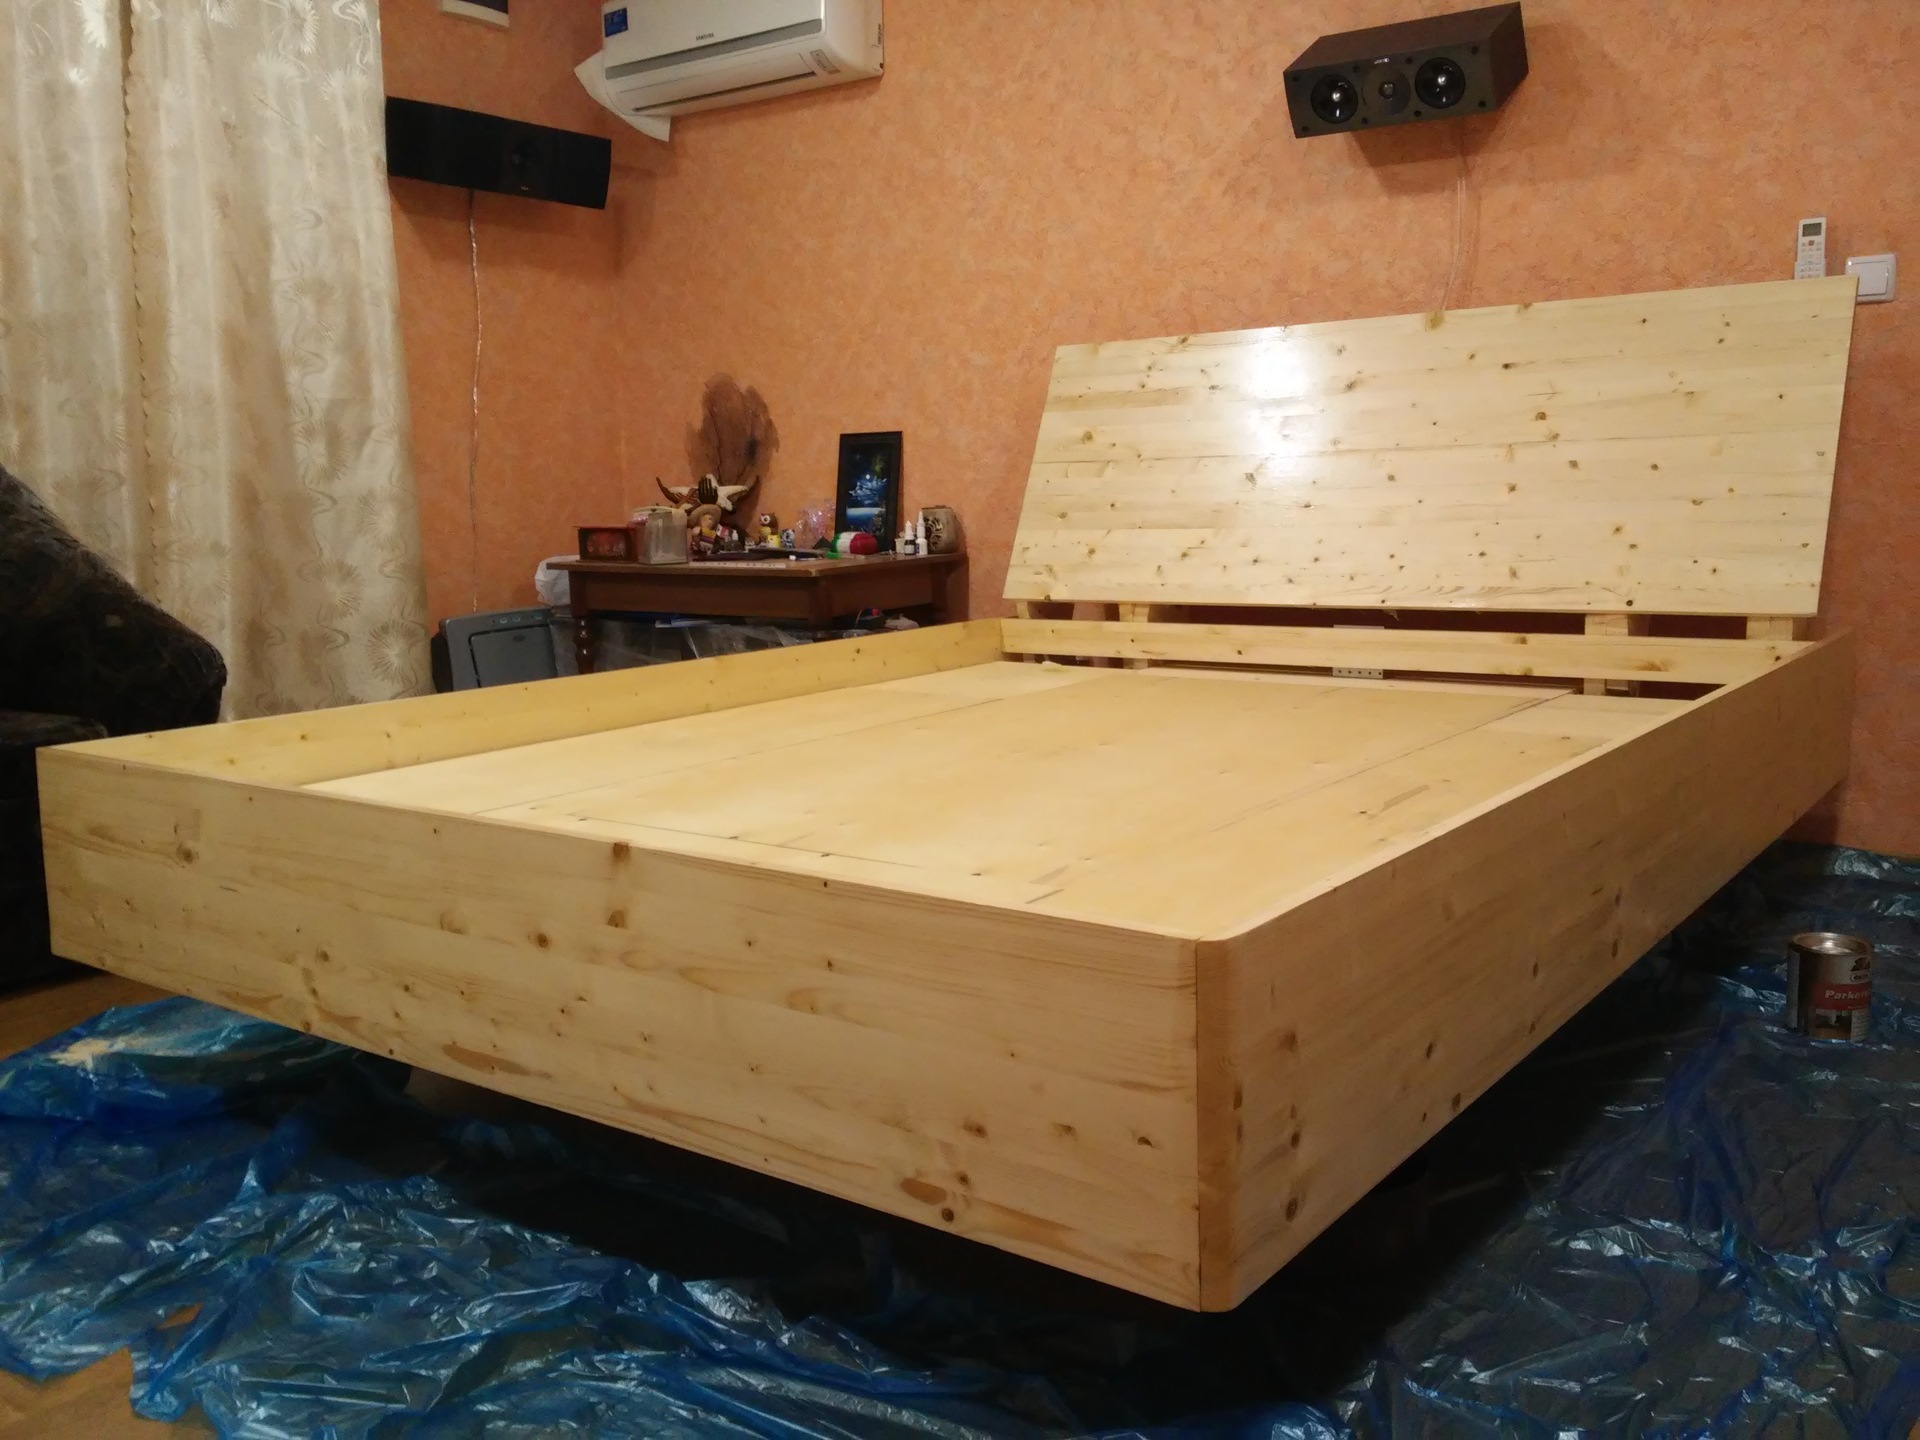 Кровать Из Фанеры Фото